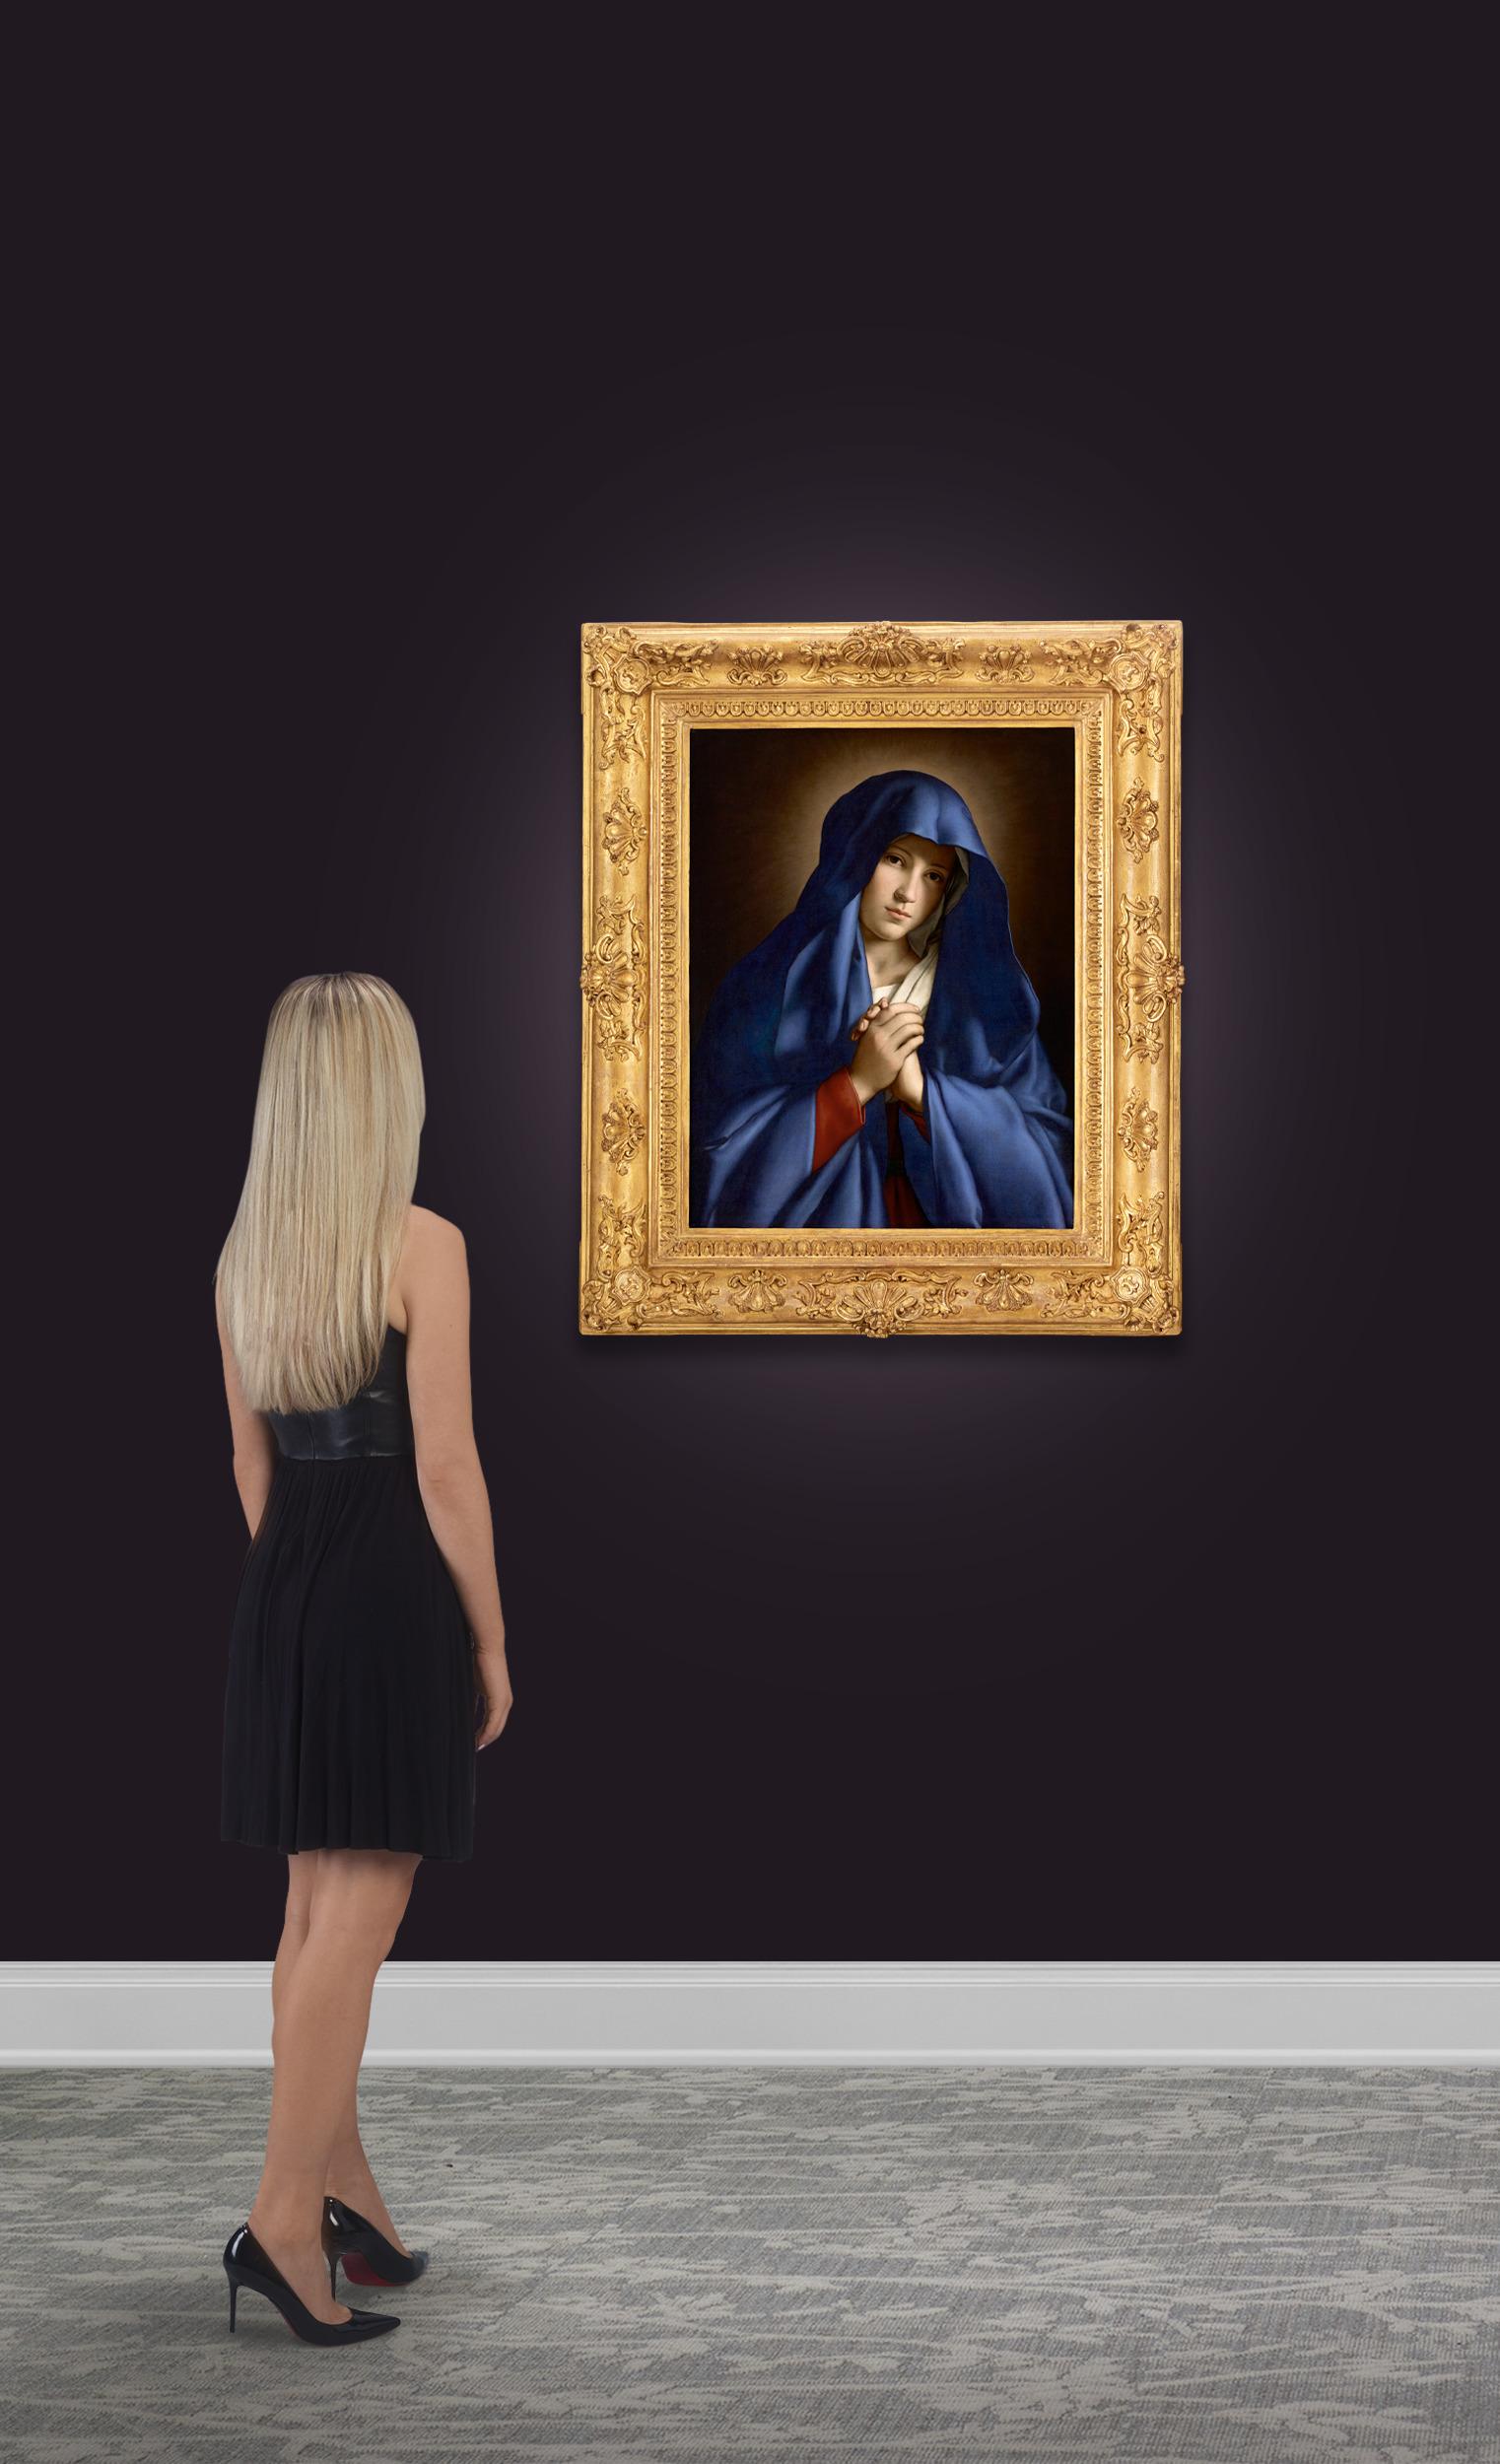 Sassoferrato (Giovanni Battista Salvi)
1609-1685  Italienisch

Madonna Addolorata

Öl auf Leinwand

Der berühmte italienische Künstler Sassoferrato und seine bewegenden religiösen Bilder sind der Inbegriff des Barock. Dieses ergreifende Bild der